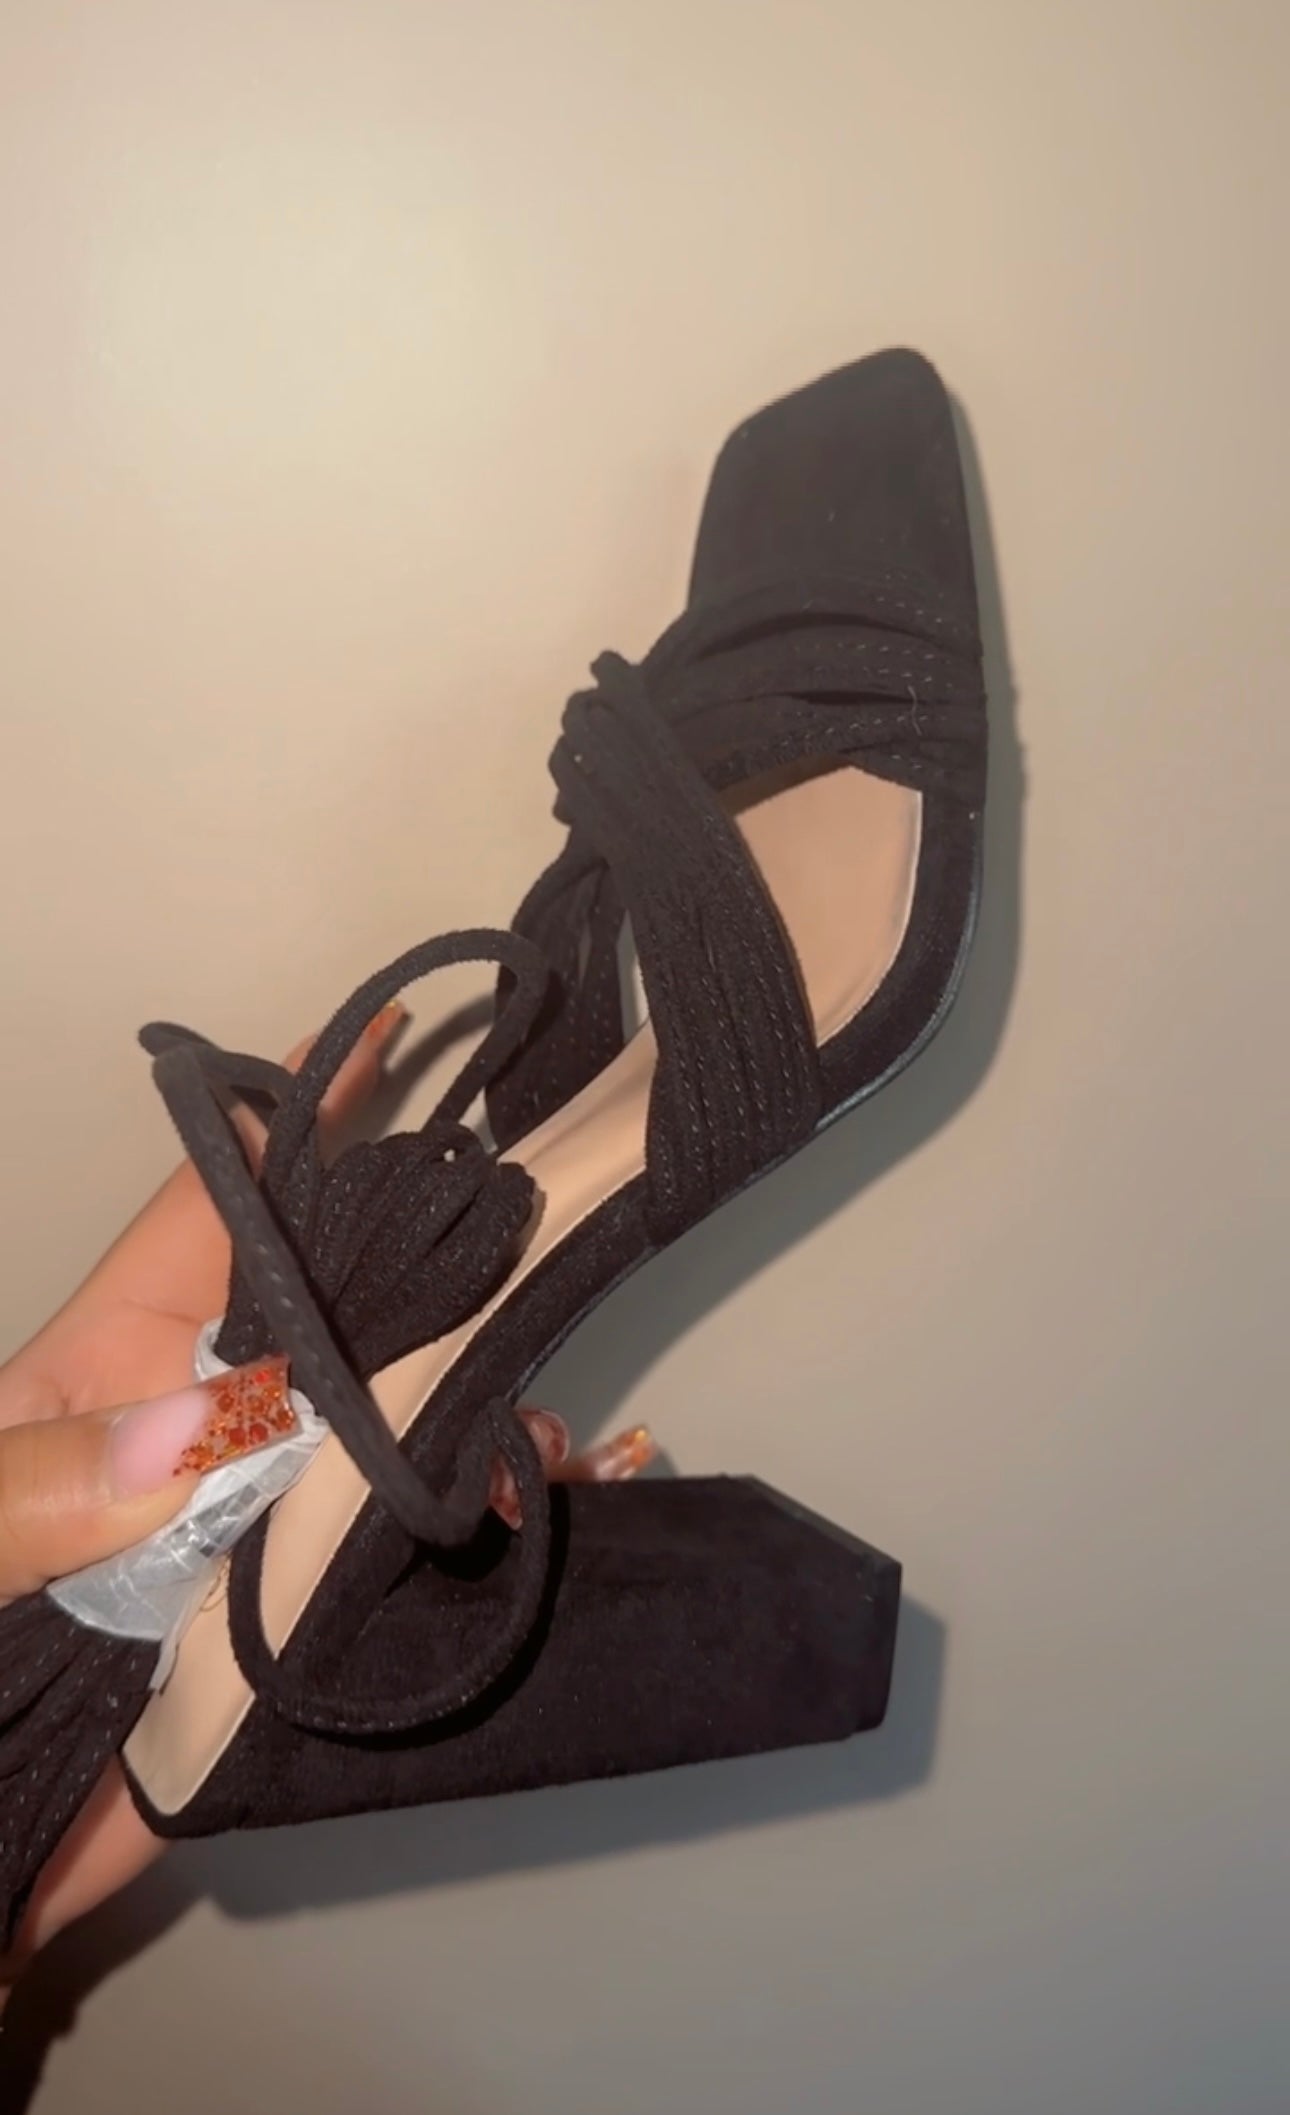 Emily’s Tie High heels